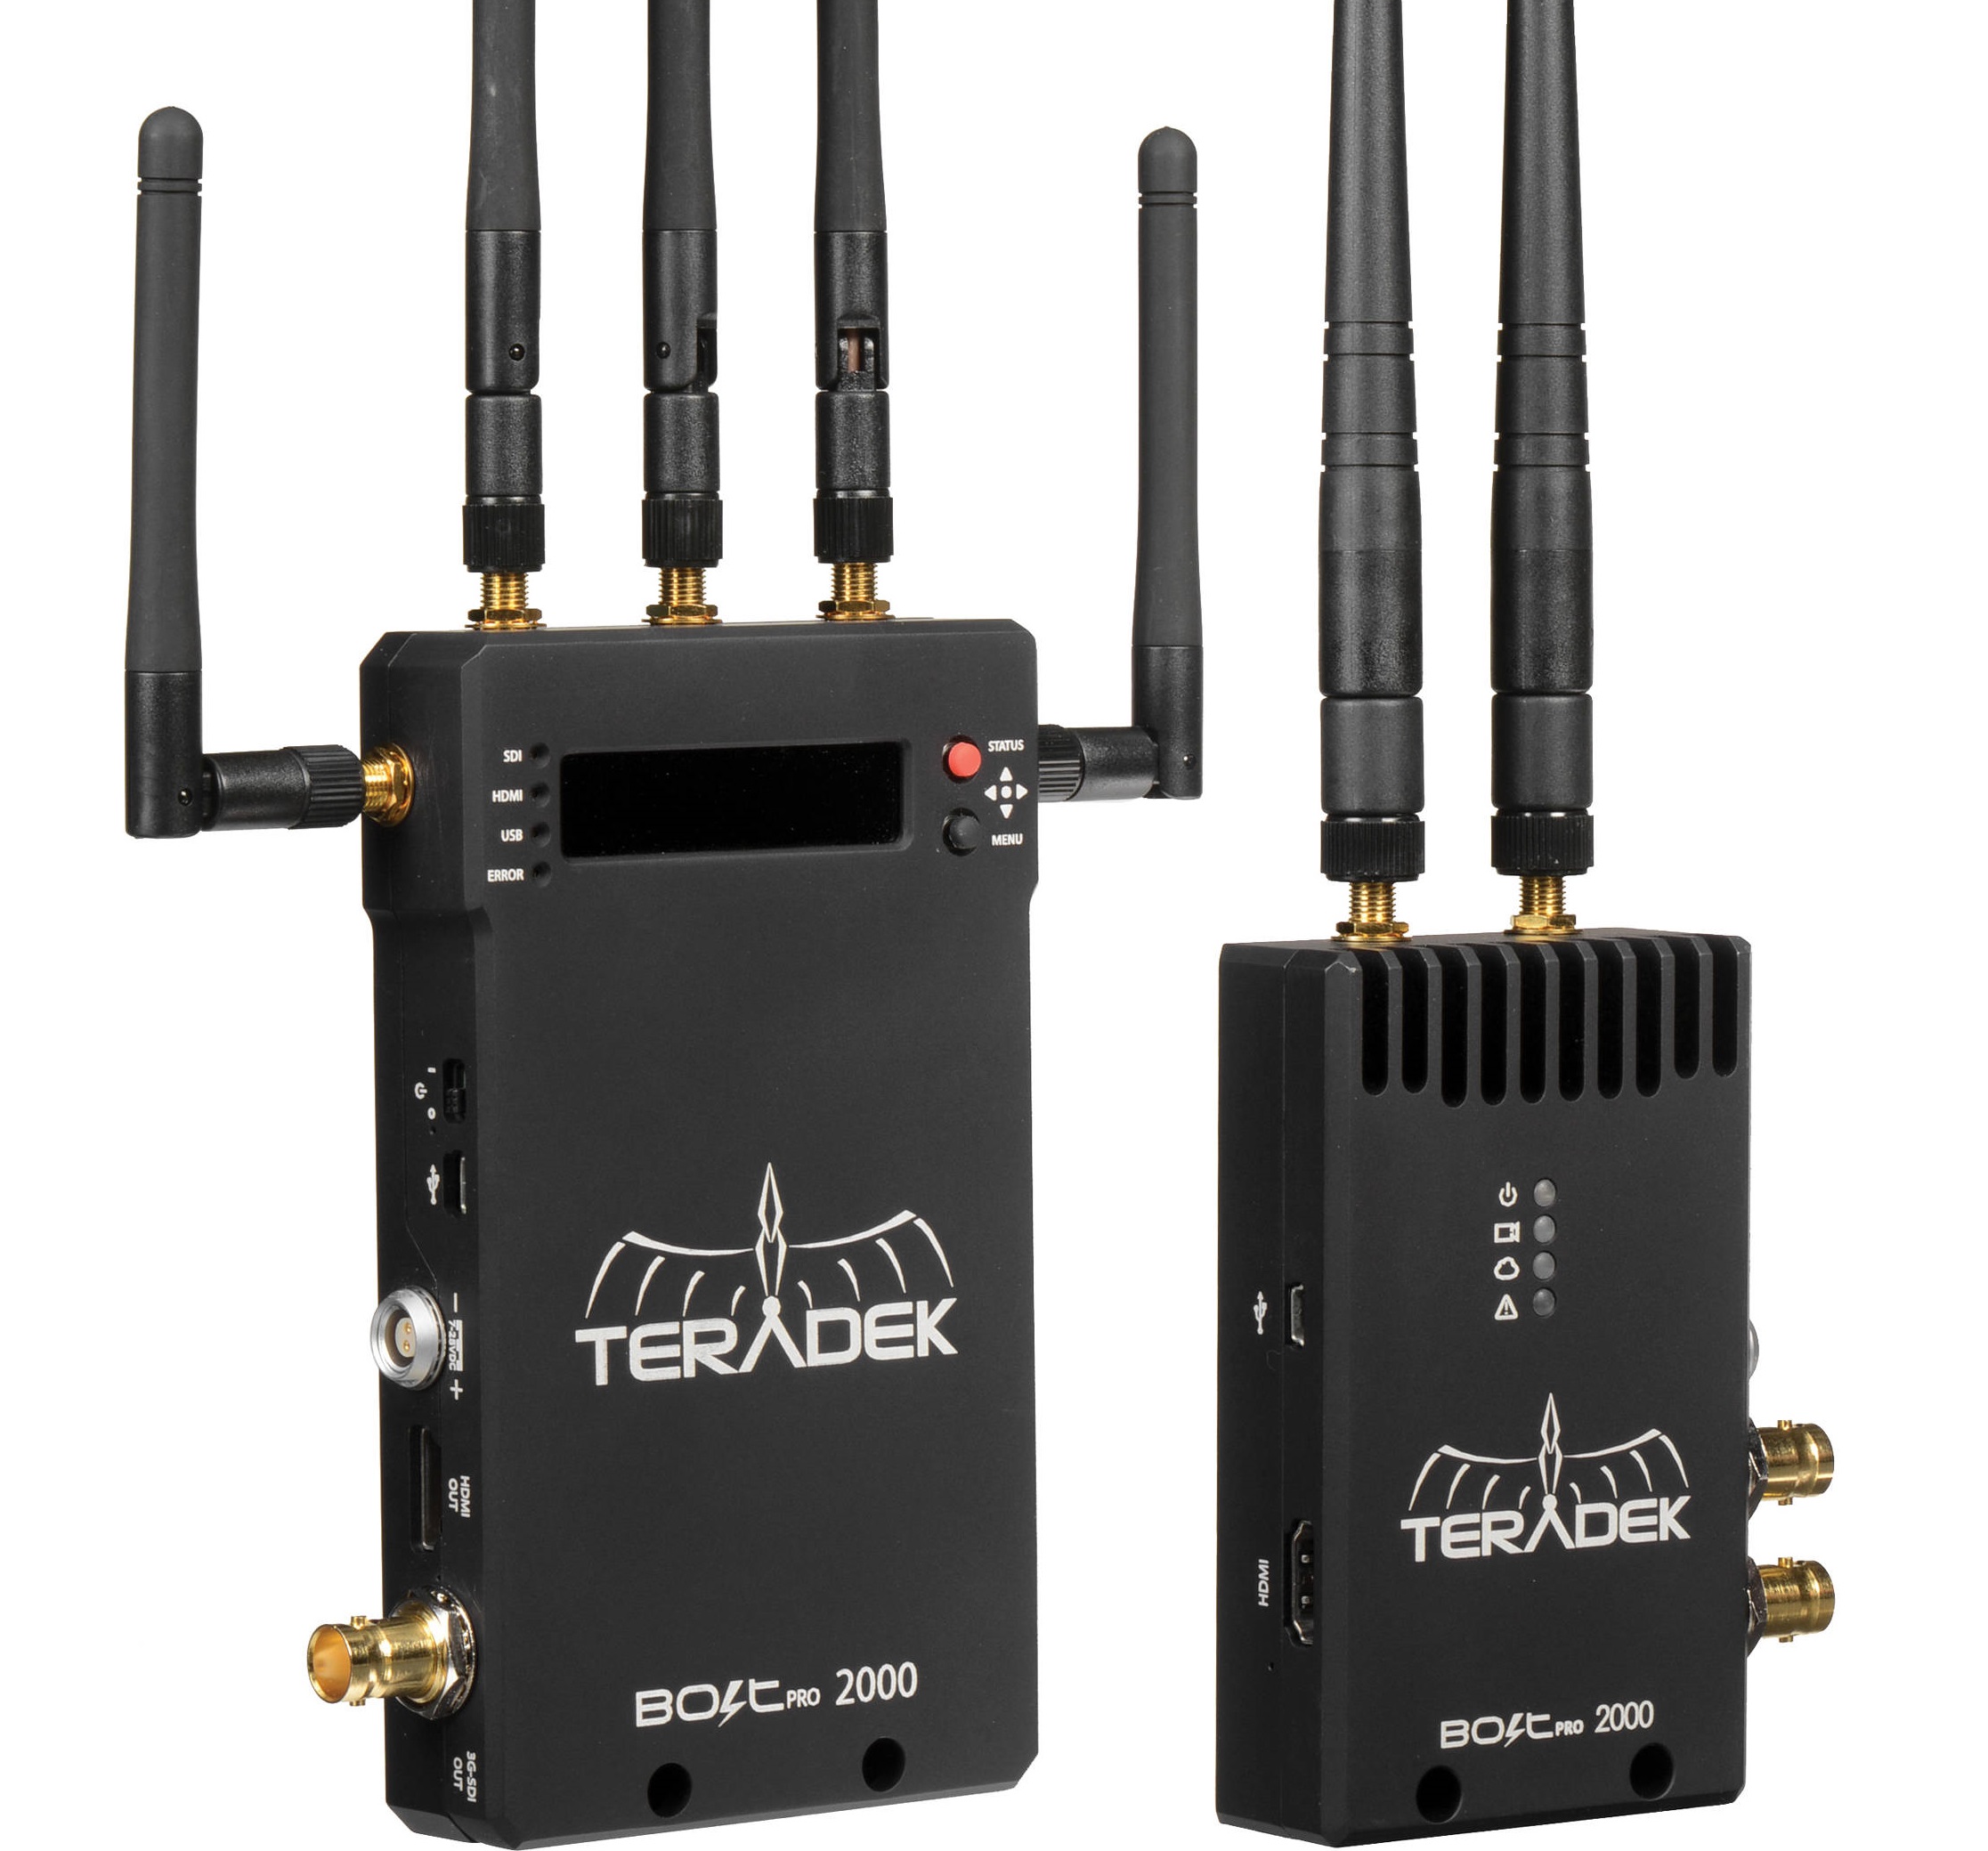 Teradek Bolt Pro 2000 Wireless Video Transmitter for rent.